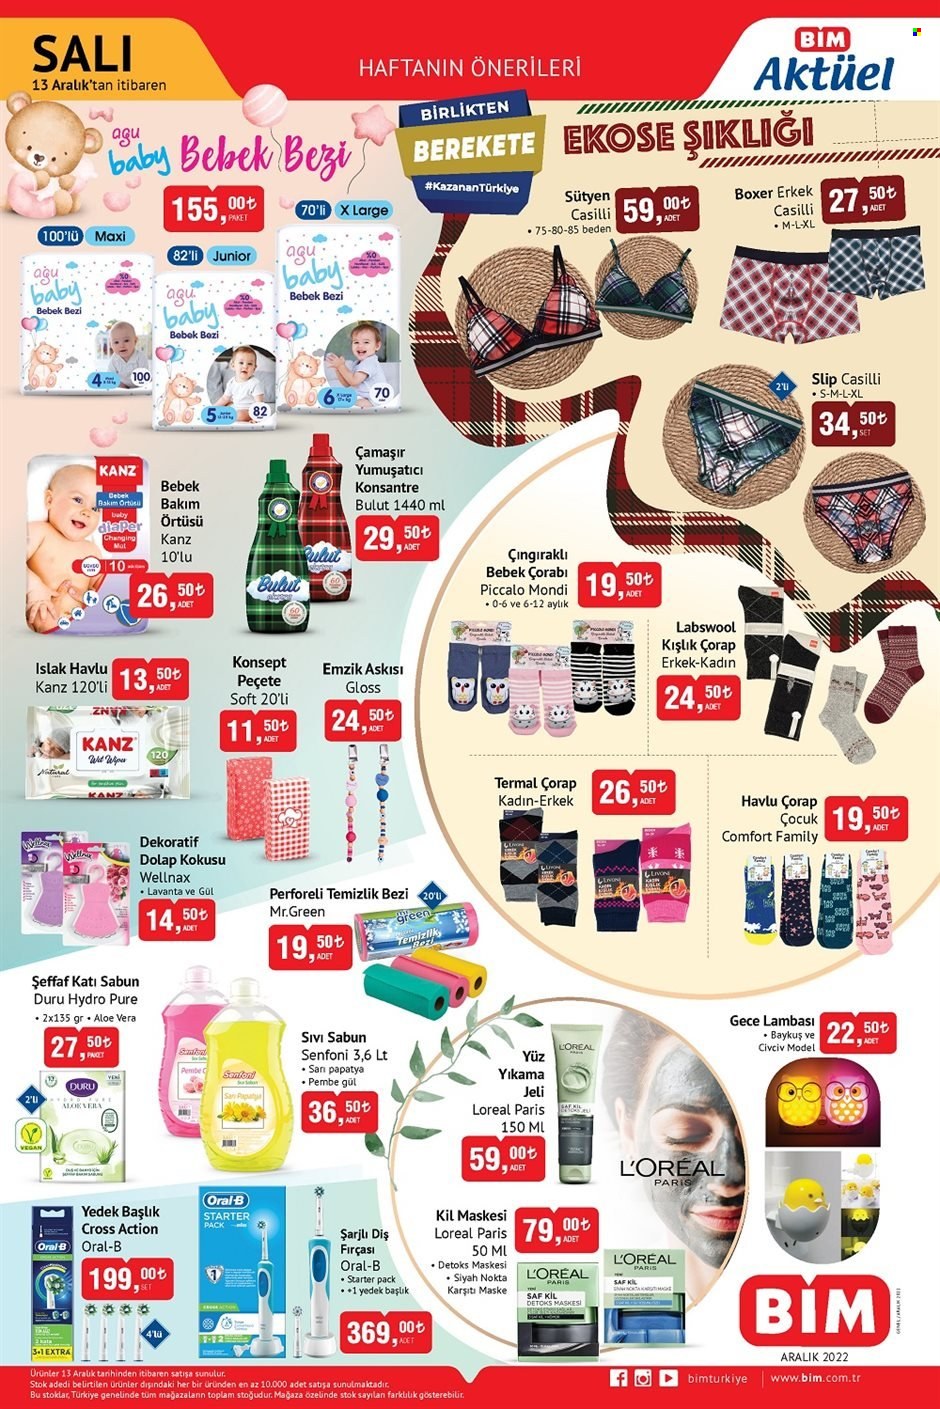 thumbnail - BİM aktüel ürünler, broşür  - 12.13.2022 - 12.26.2022 - Satıştaki ürünler - bebek bezi, islak havlu, sabun, sıvı sabunu, Oral-B, diş fırçası, L’Oréal, fırça, Papatya, oyuncak, maske. Sayfa 2.